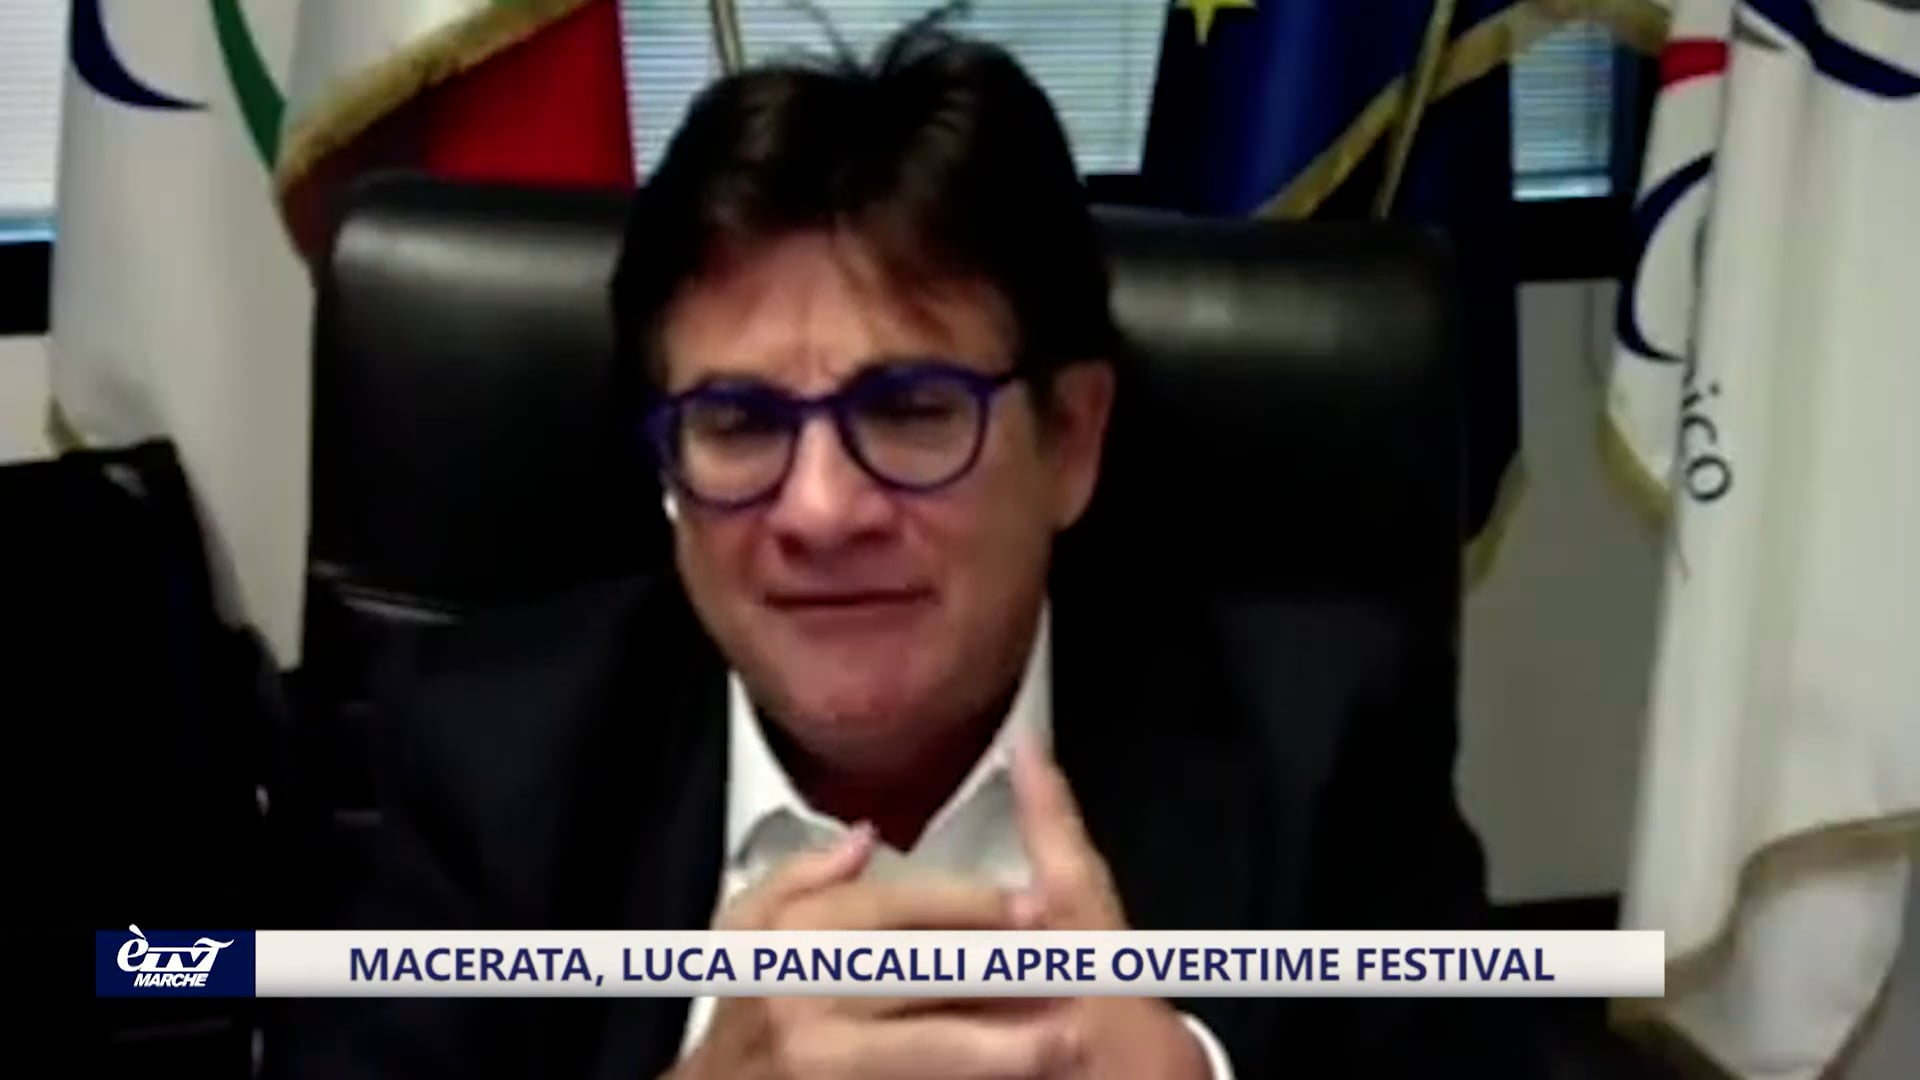 Macerata, Luca Pancalli apre Overtime Festival